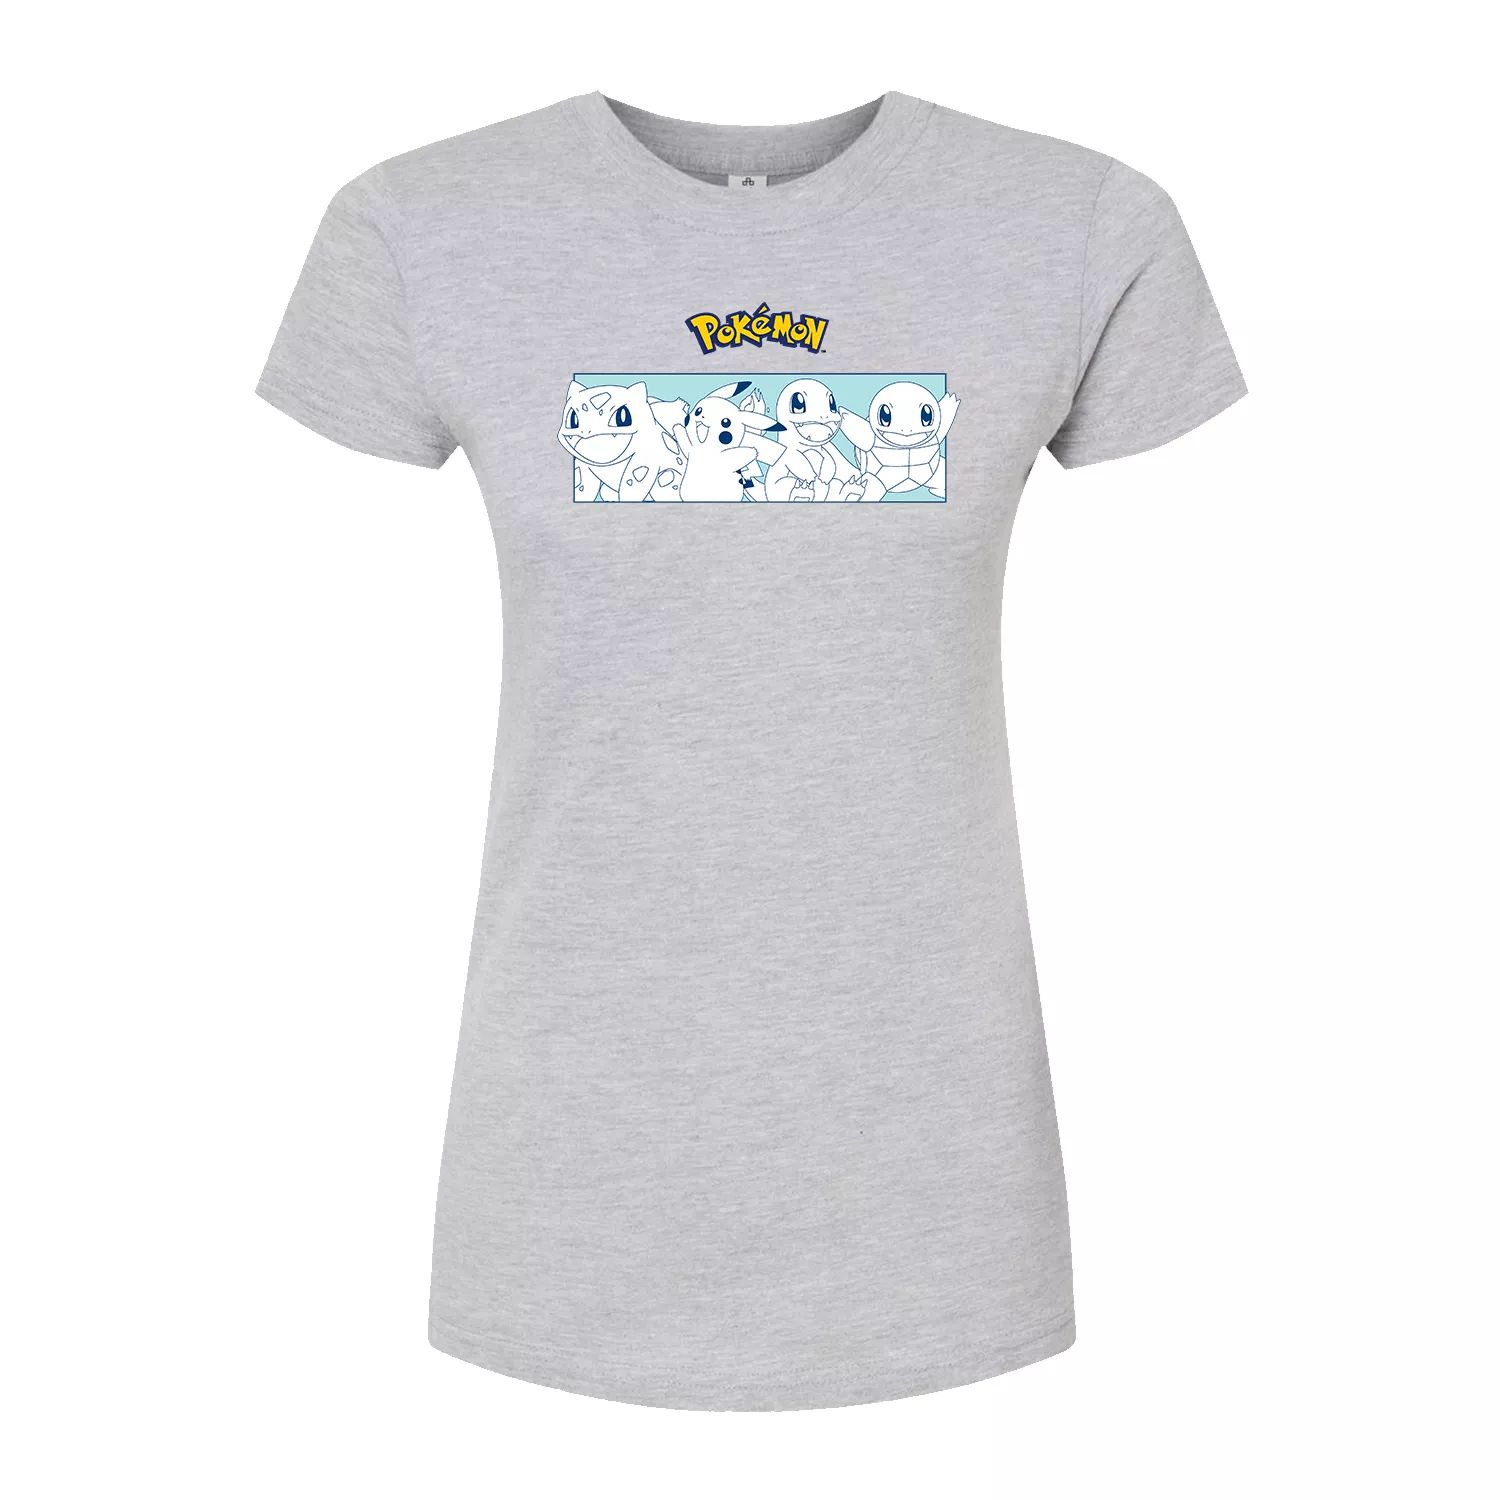 Облегающая футболка Pokémon Starters для юниоров Licensed Character, серый